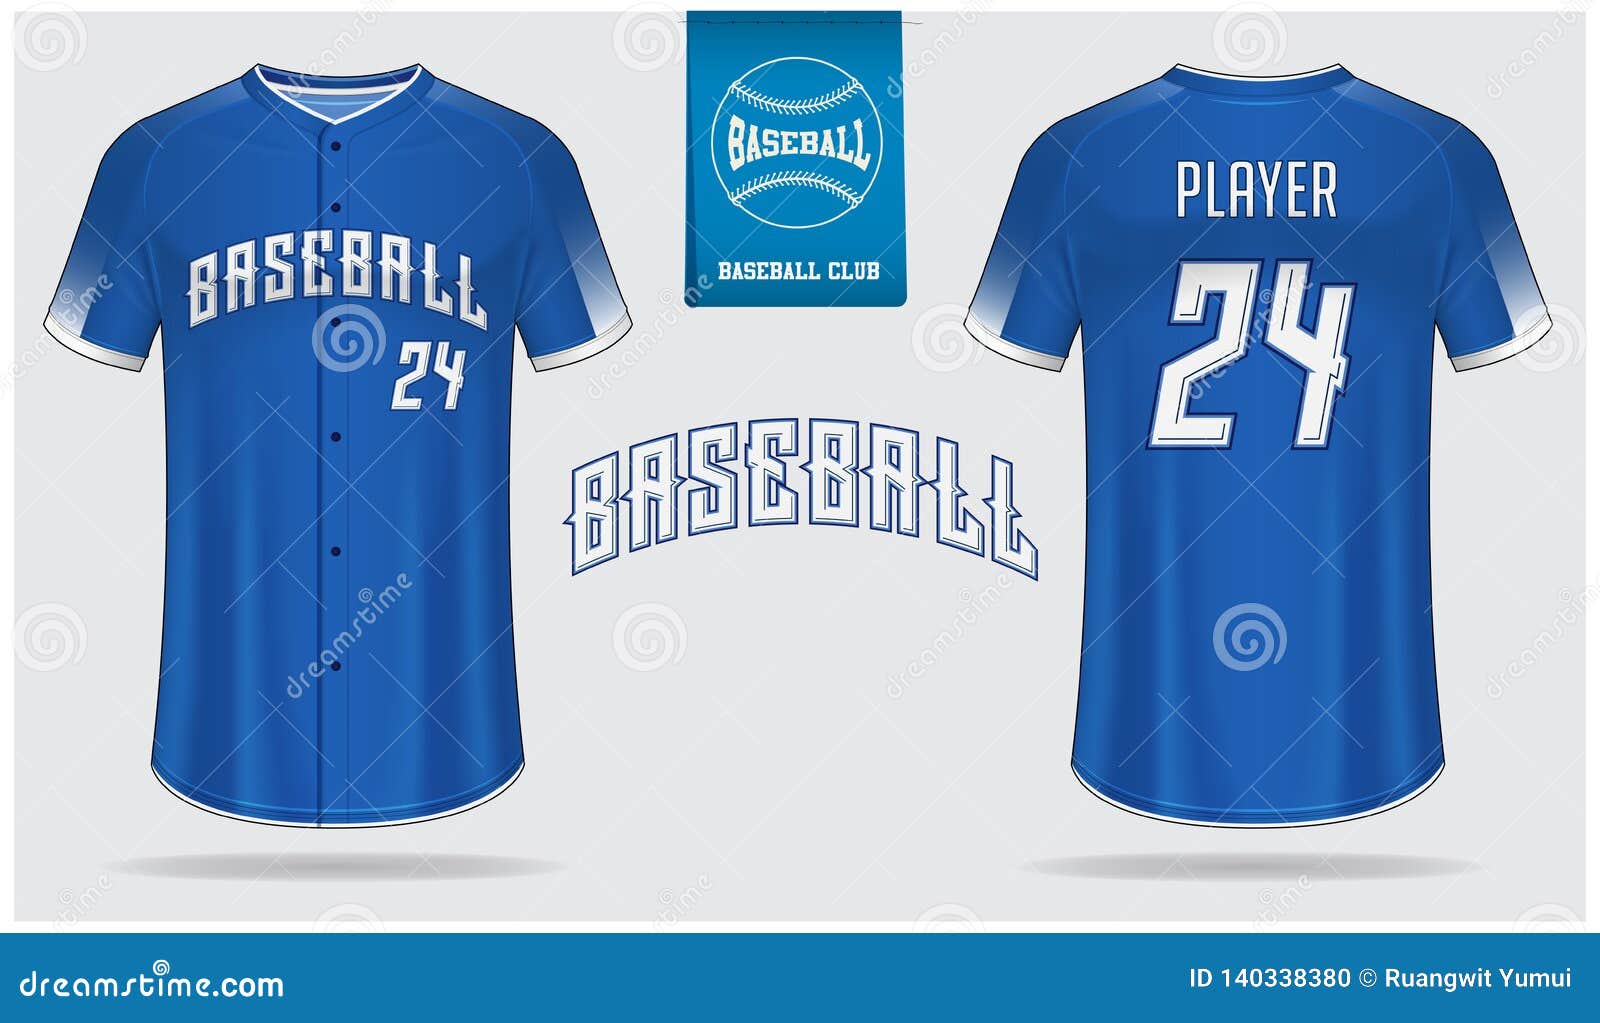 Download Baseball Jersey, Sport Uniform, Raglan T-shirt Sport ...